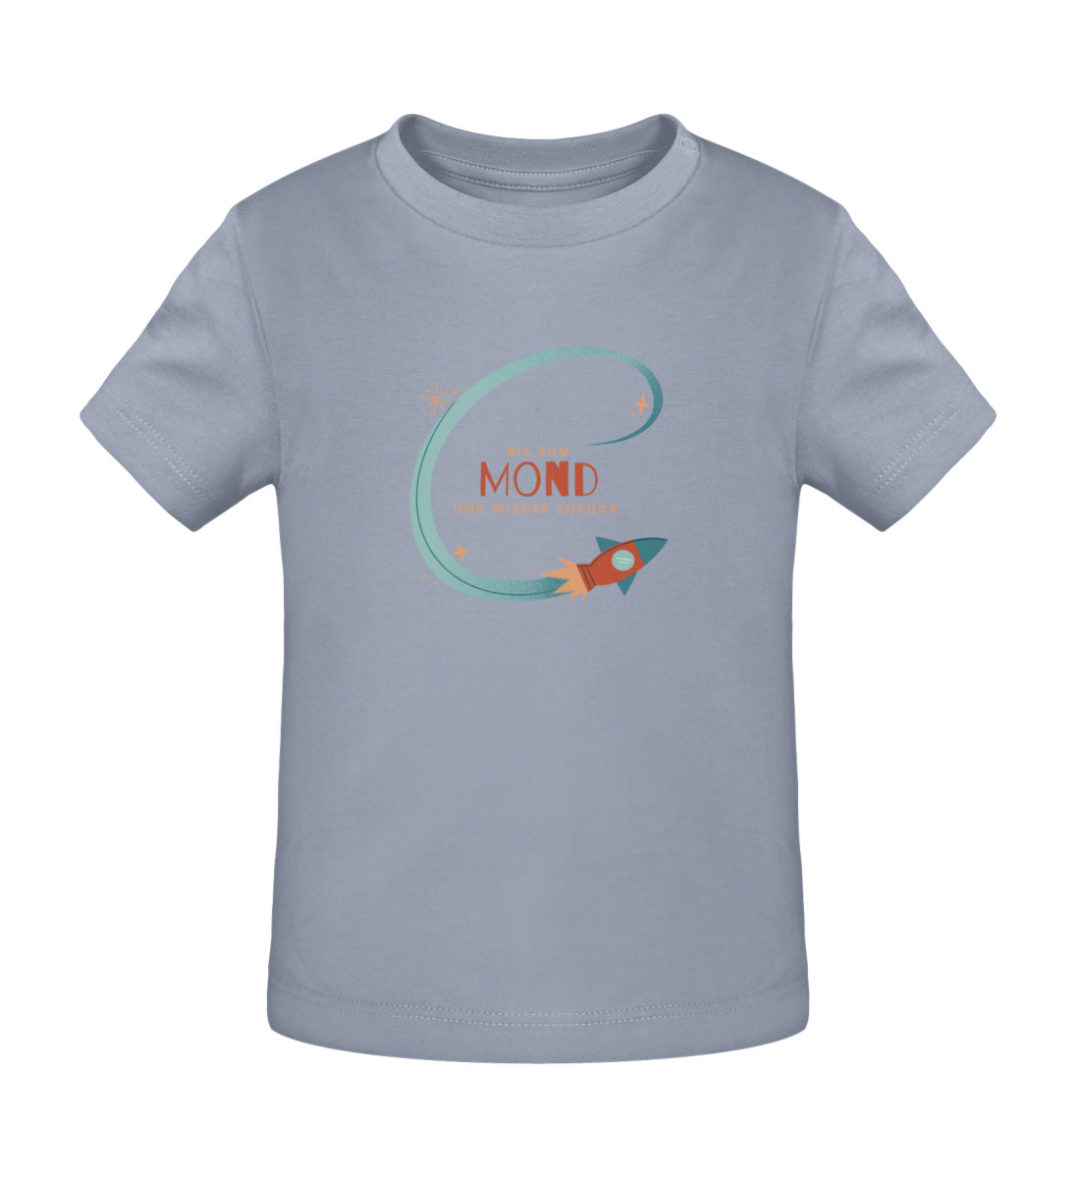 Bis zum Mond und wieder zurück - Baby Creator T-Shirt ST/ST-7086